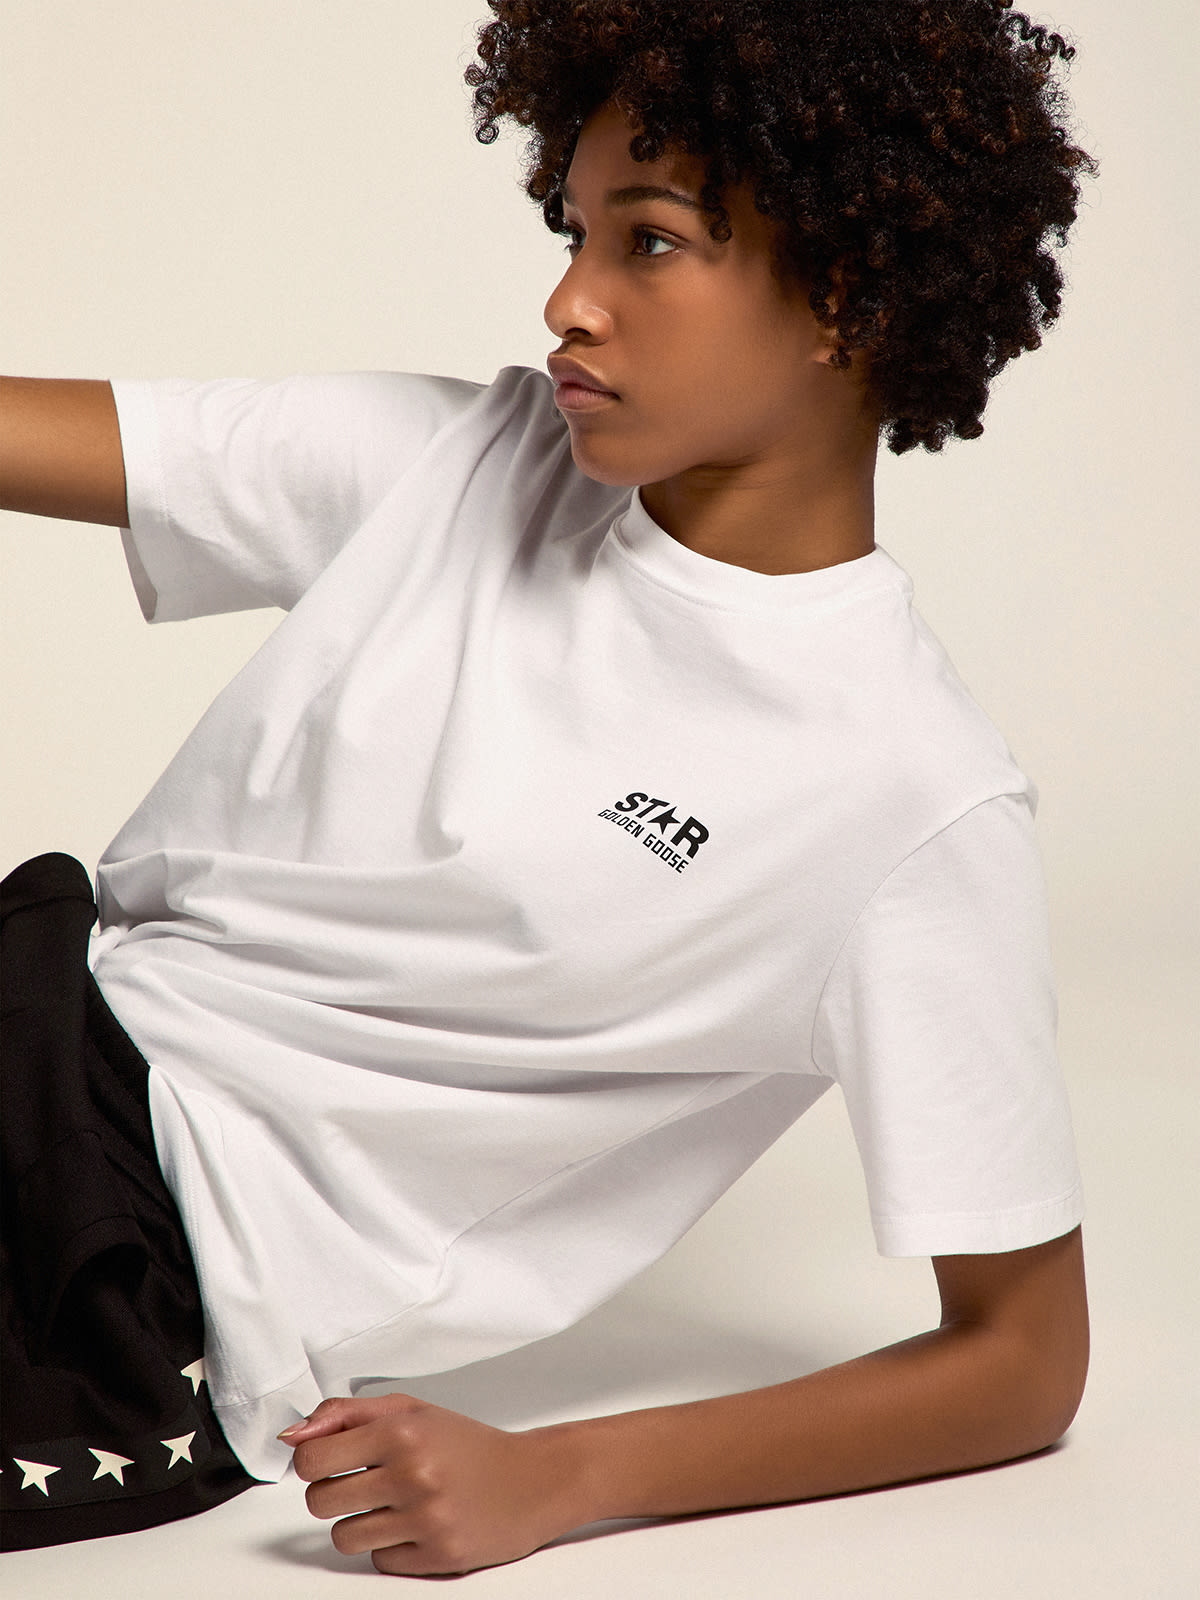 Golden Goose - Weißes Damen-T-Shirt aus der Star Collection mit Logo und Stern in kontrastierendem Schwarz in 